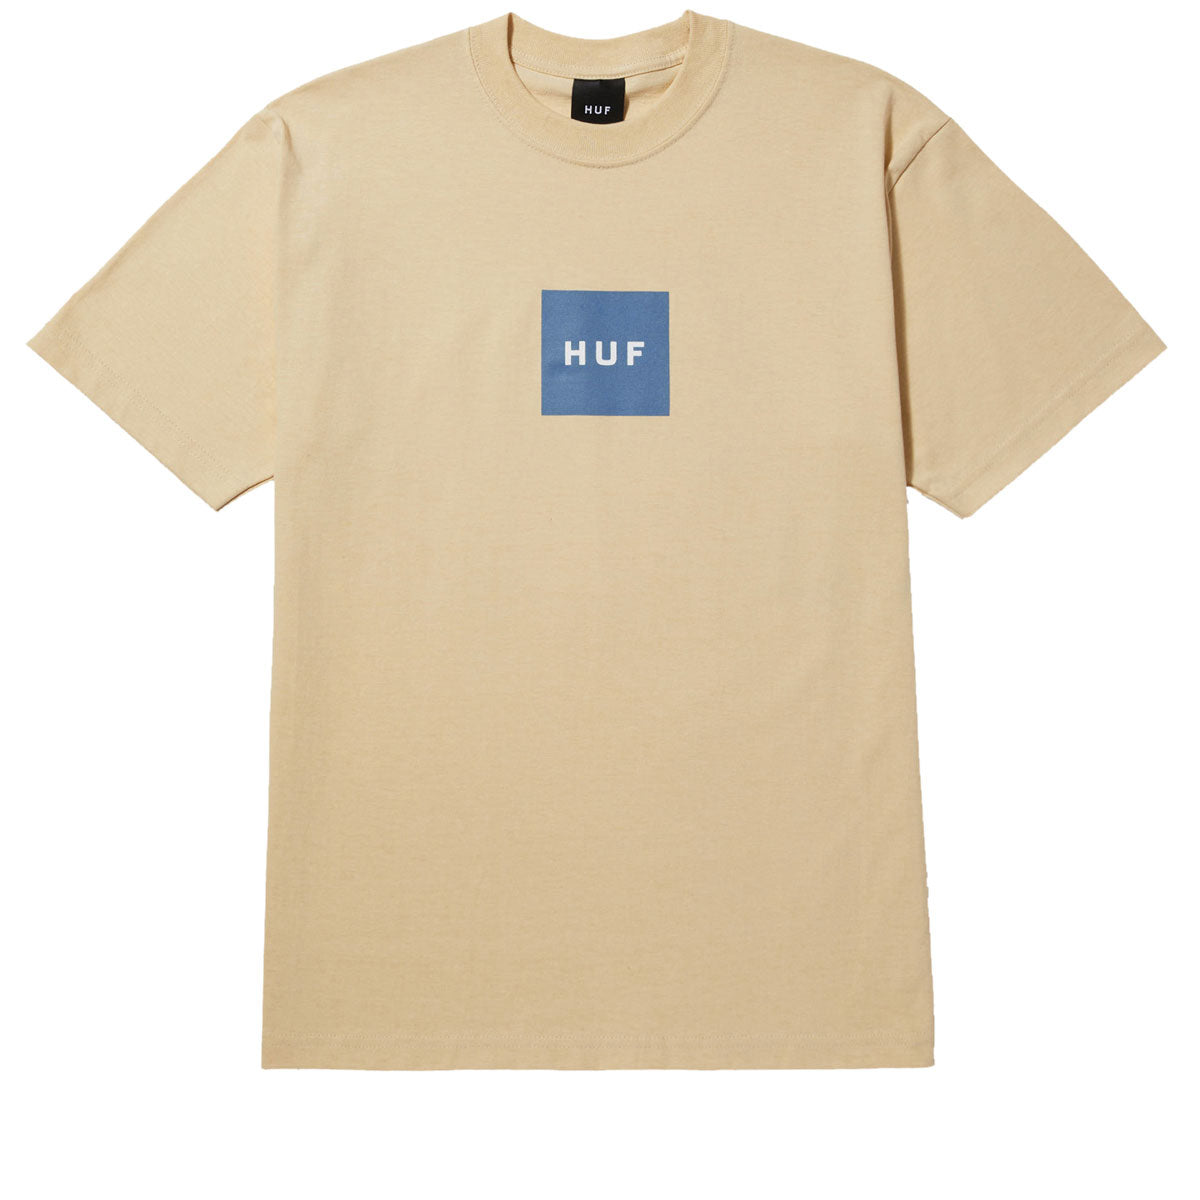 Huf Set Box T-Shirt - Wheat image 1